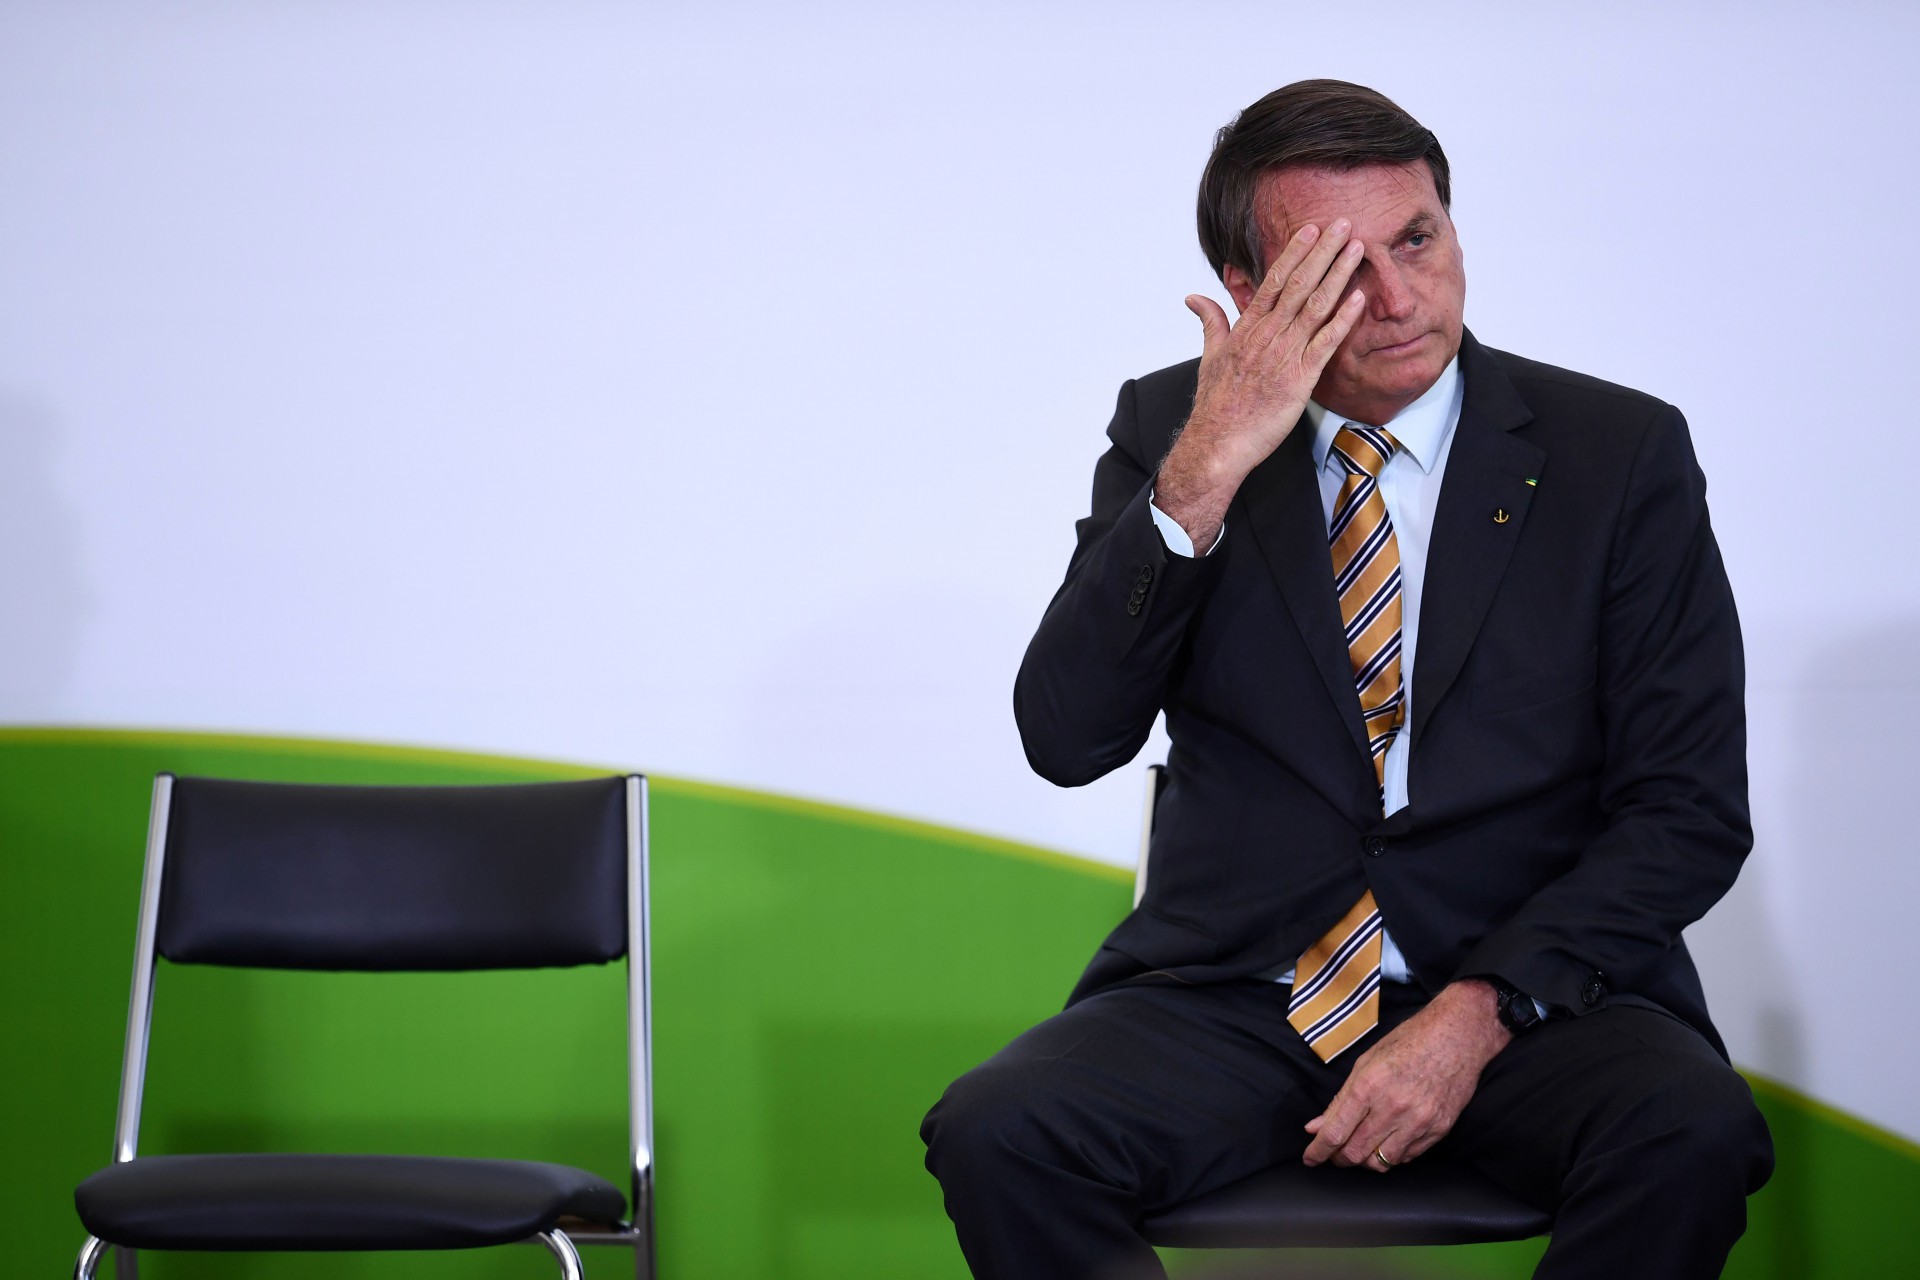 O presidente Jair Bolsonaro durante o lançamento de um programa de retomada do turismo, setor gravemente afetado pelo novo surto de coronavírus, no Palácio do Planalto, em Brasília, em 10 de novembro de 2020.  (Foto de EVARISTO SA / AFP) (Foto: EVARISTO SA / AFP)